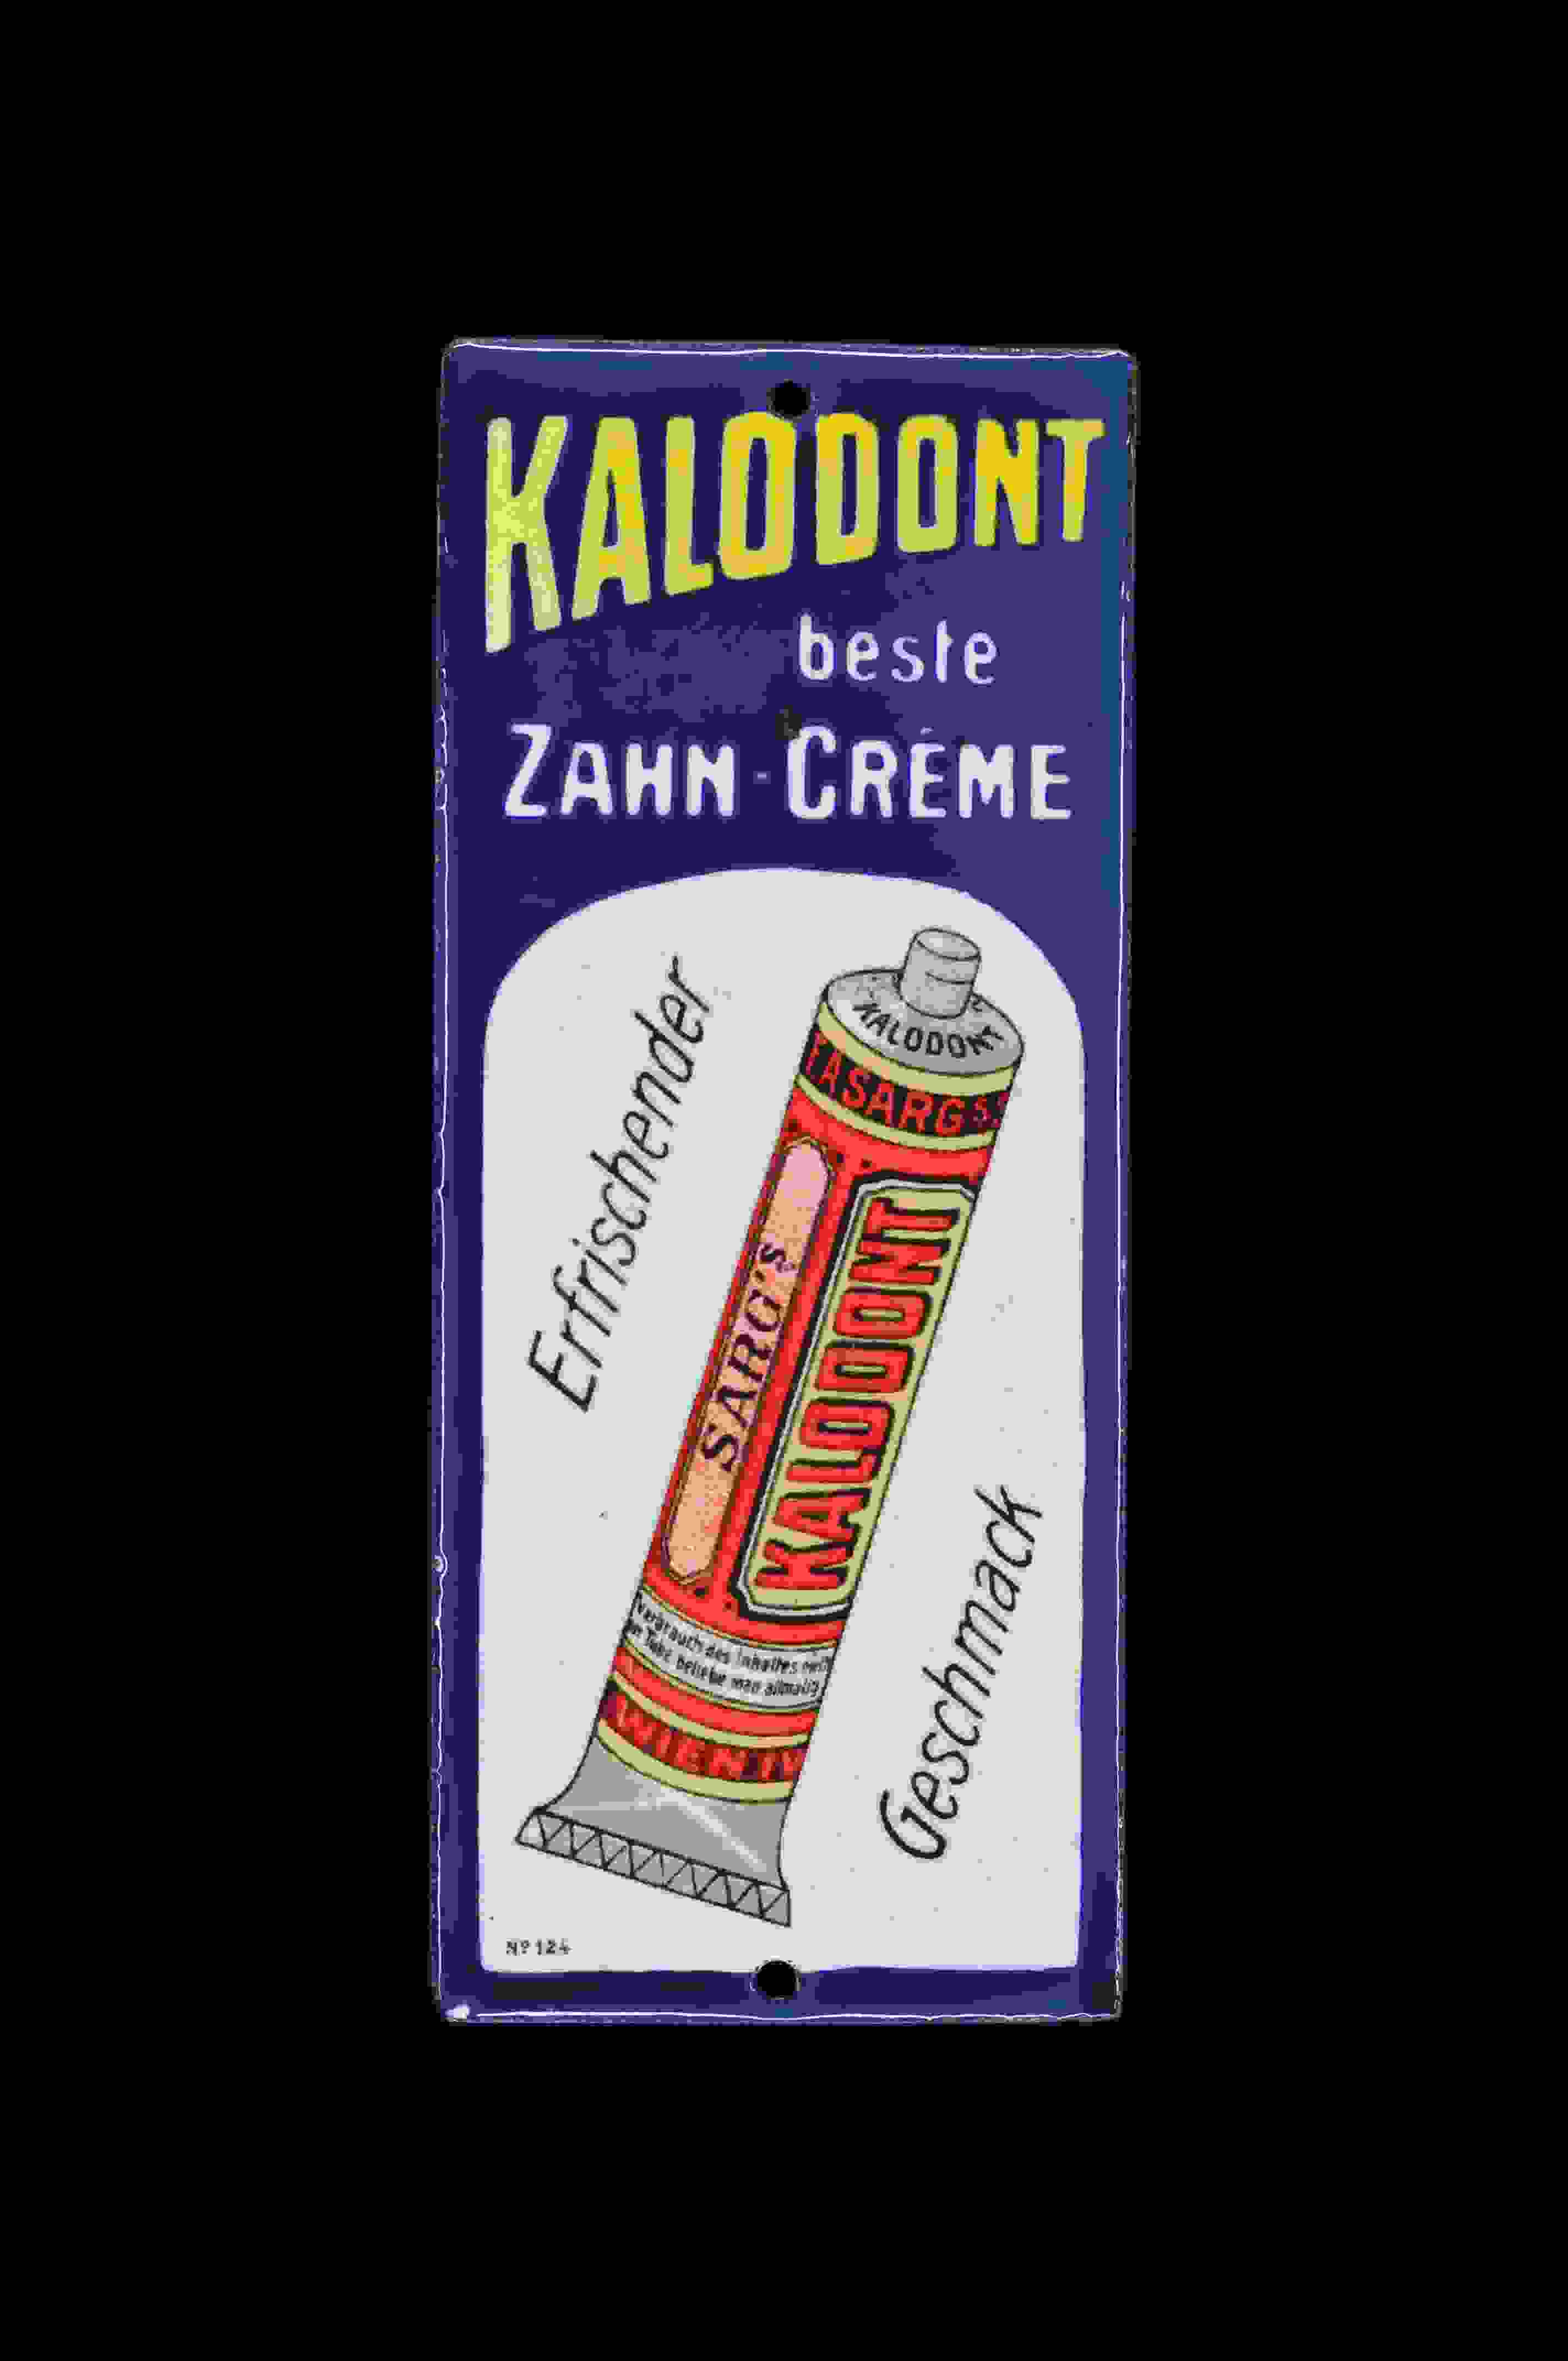 Kalodont beste Zahn-Crême 